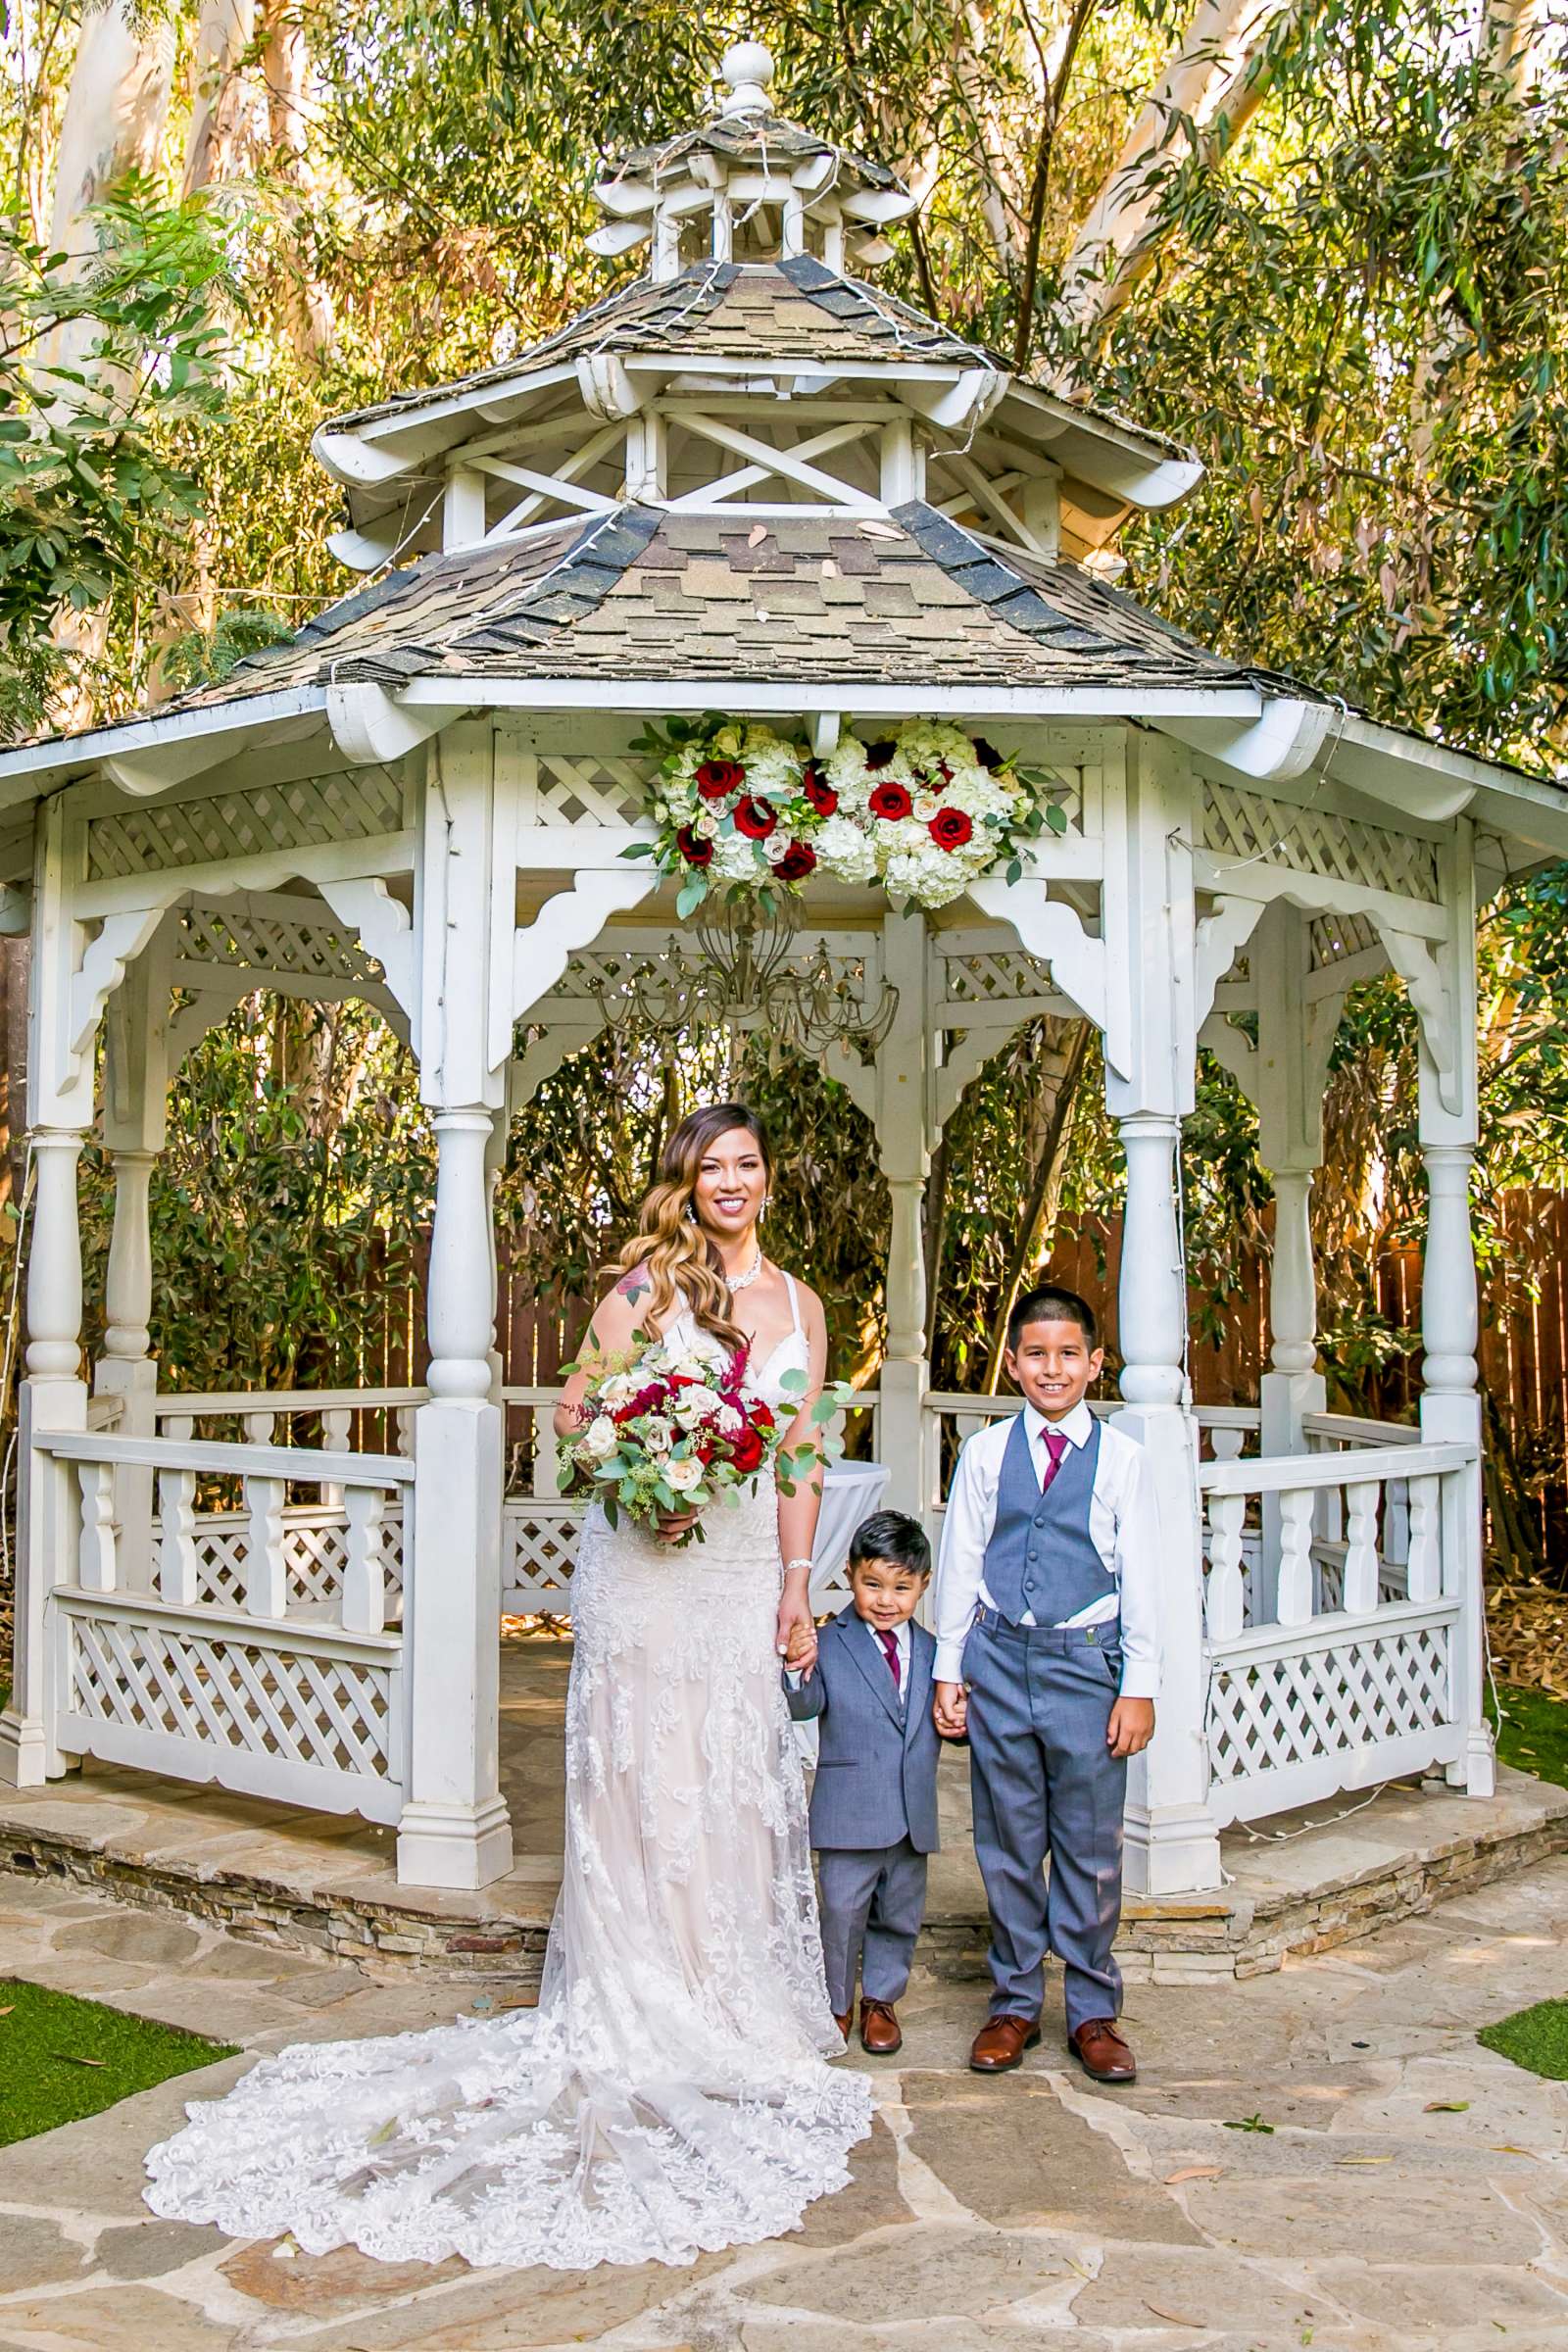 Twin Oaks House & Gardens Wedding Estate Wedding, Merrilynn and Trey Wedding Photo #66 by True Photography